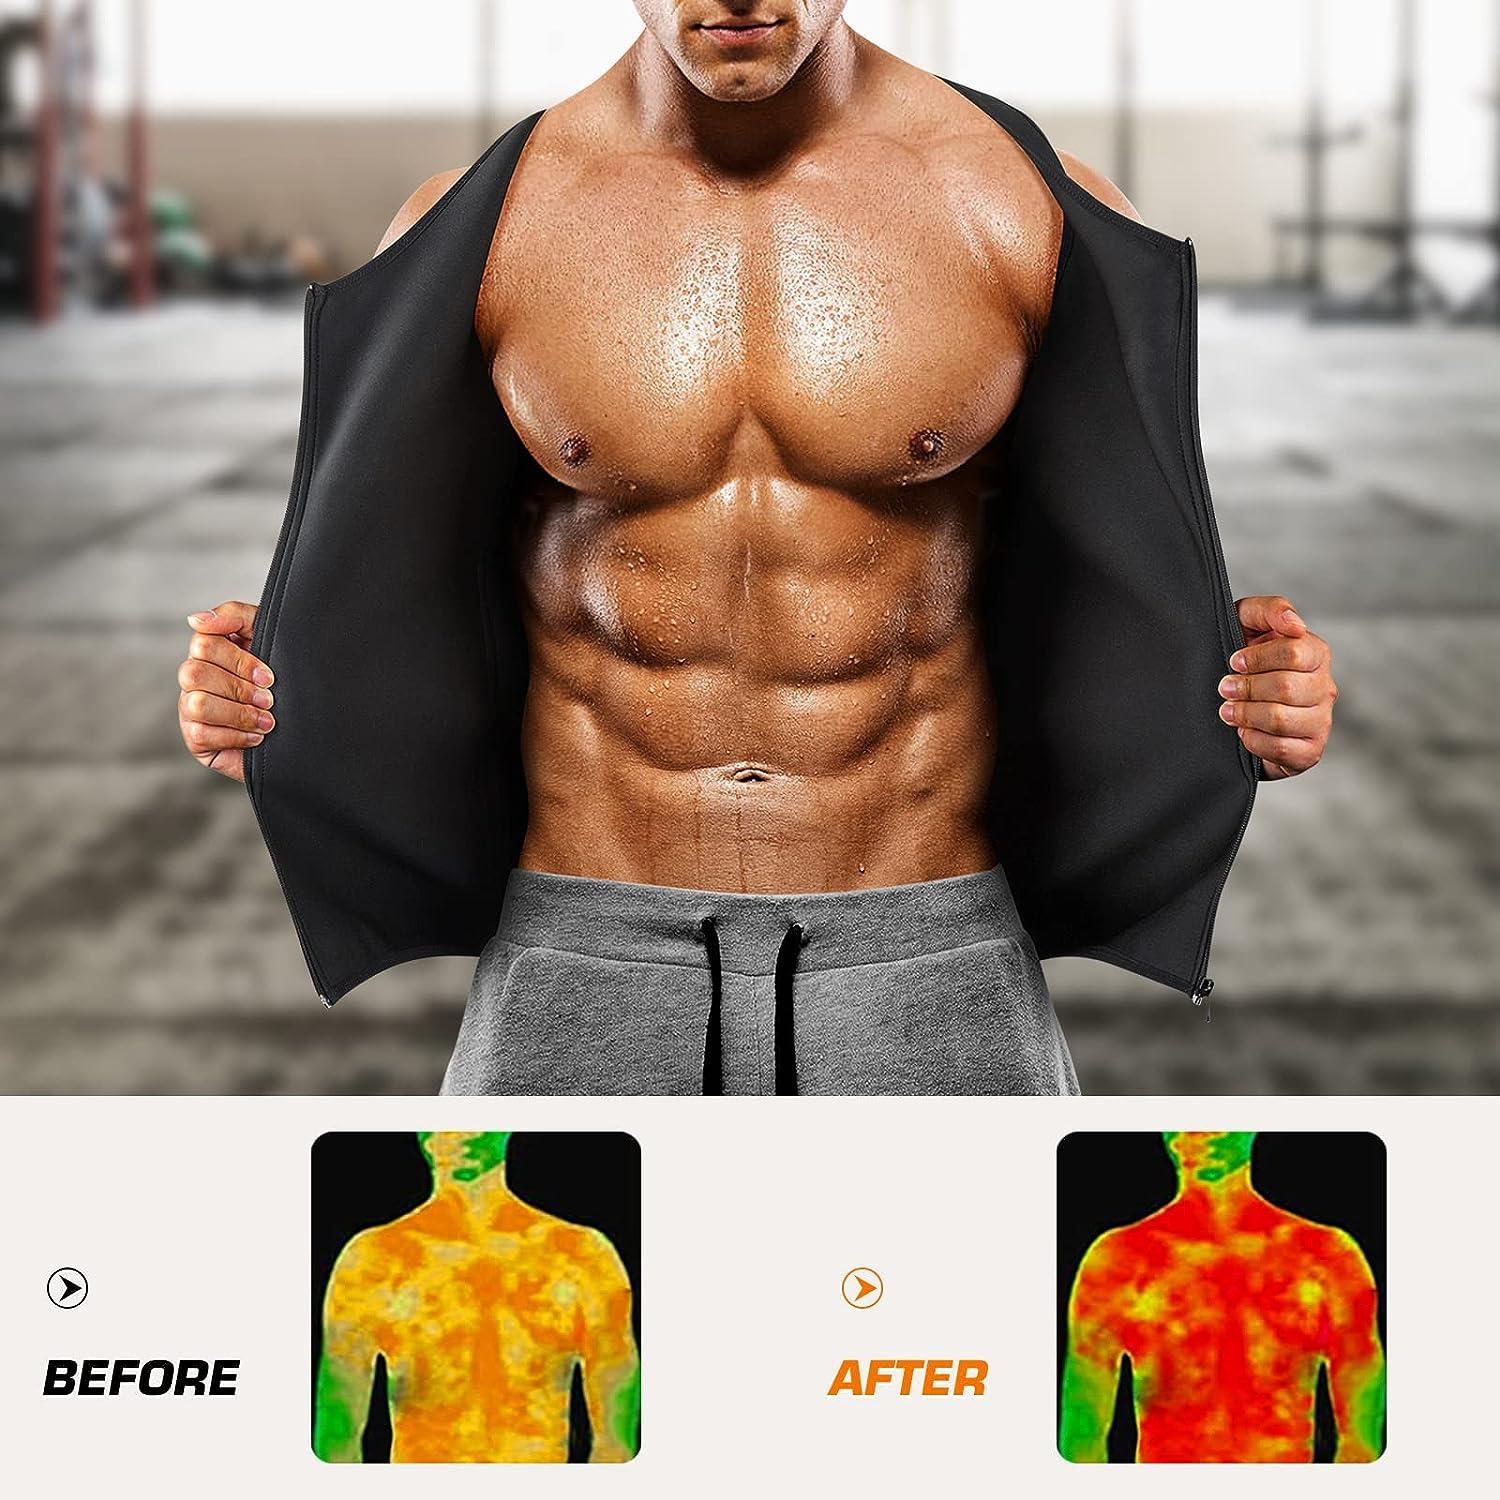  Men Hot Neoprene Waist Trainer Vest Workout Sauna Suit Smooth  Zipper Tank Top Weight Loss Corset Body Shaper Gym Sweat Shirt : Sports &  Outdoors